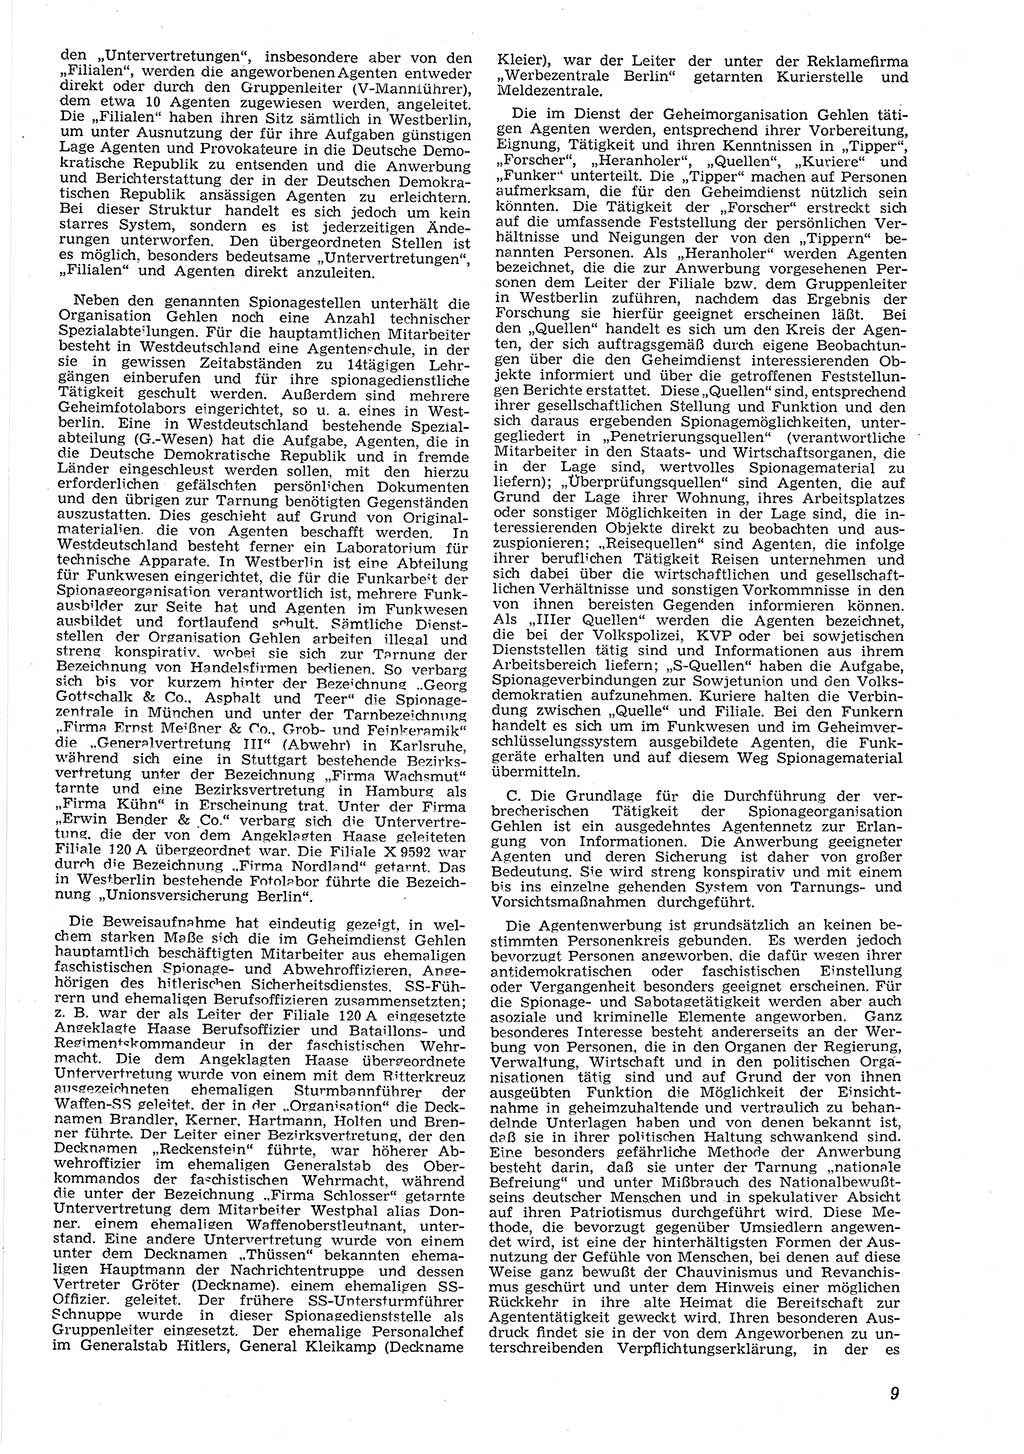 Neue Justiz (NJ), Zeitschrift für Recht und Rechtswissenschaft [Deutsche Demokratische Republik (DDR)], 8. Jahrgang 1954, Seite 9 (NJ DDR 1954, S. 9)